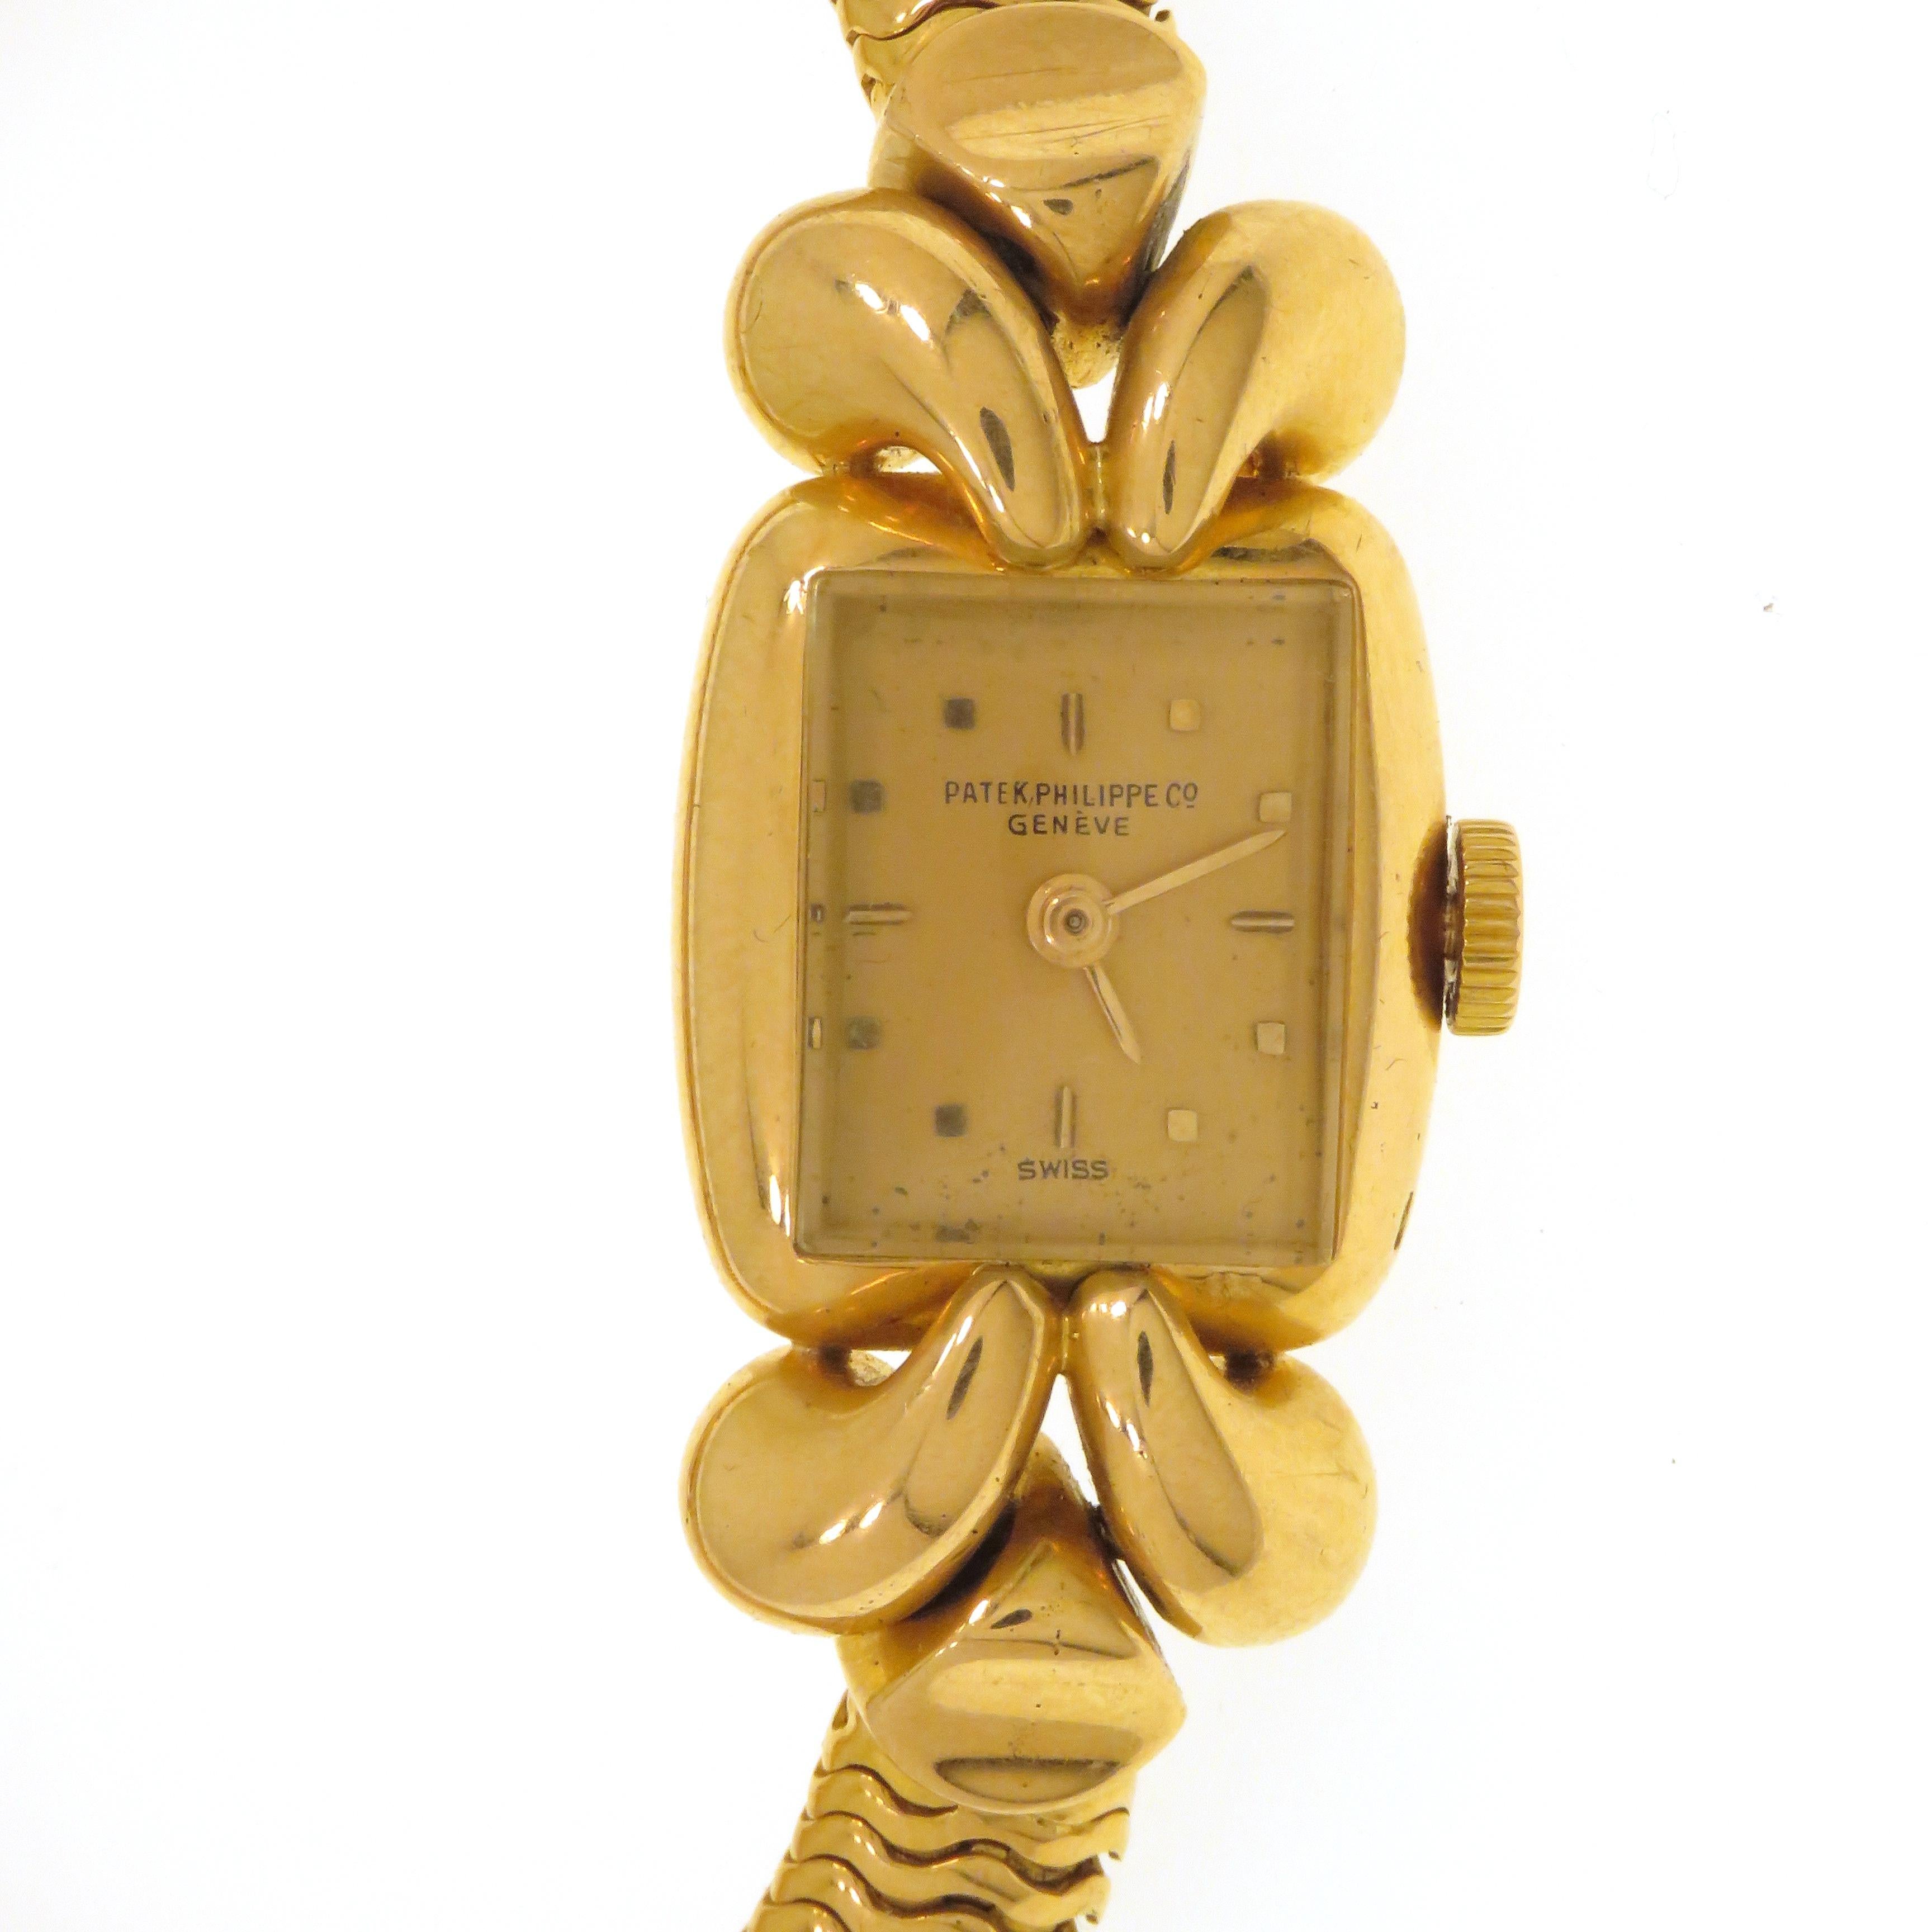 Seltene Patek Philippe Damenarmbanduhr aus den 1940er Jahren mit Handaufzug an einem 18-karätigen Roségold-Röhrenarmband. Gehäuse und Armband aus massivem Gold. Das Gehäuse misst 17x19 mm, das Röhrenarmband hat einen Durchmesser von 7 mm. Die Uhr